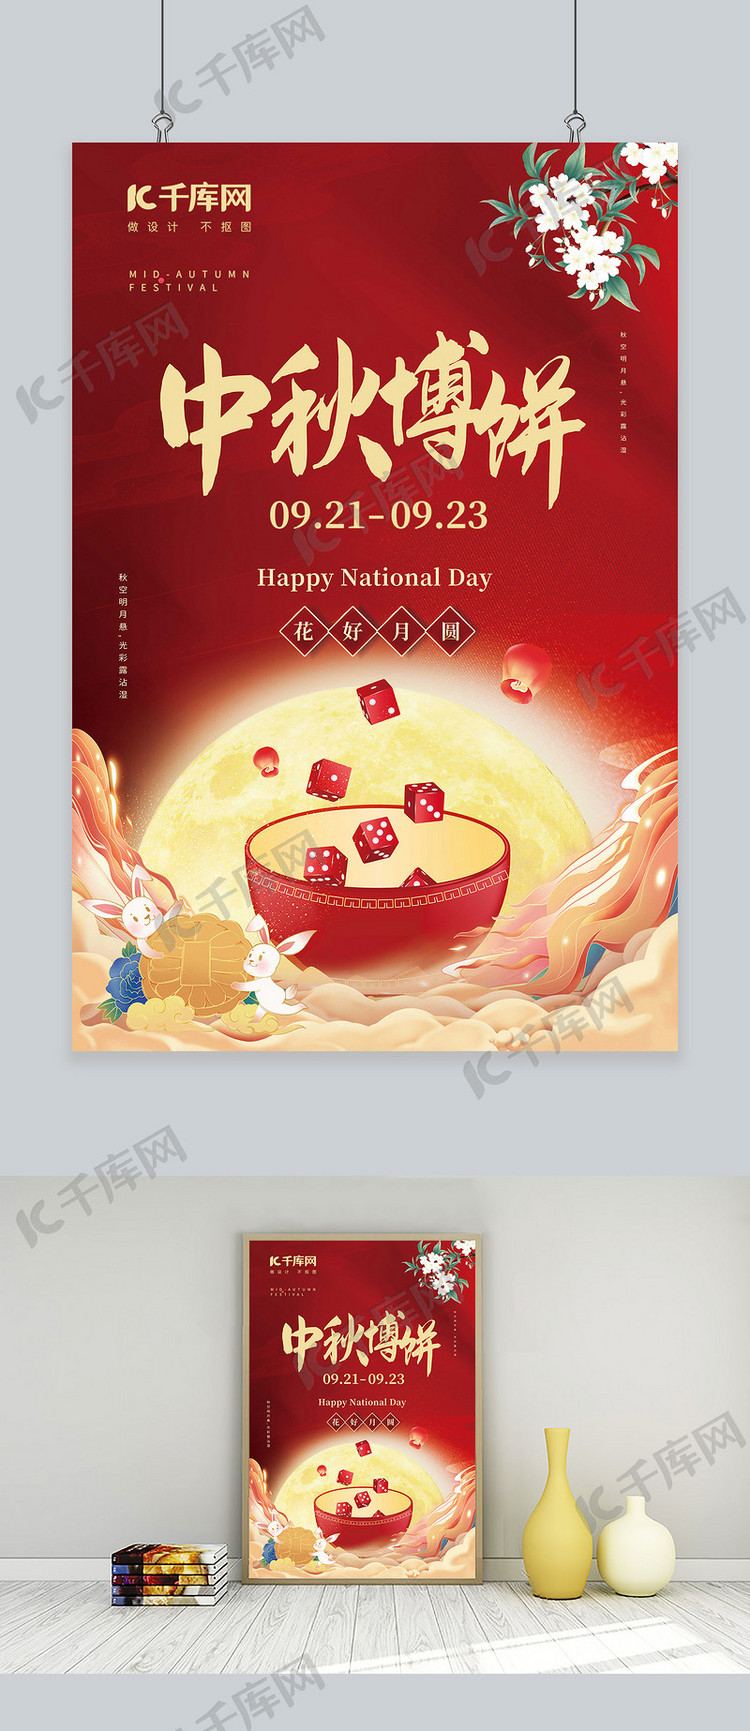 中秋博饼骰子红色中国风海报